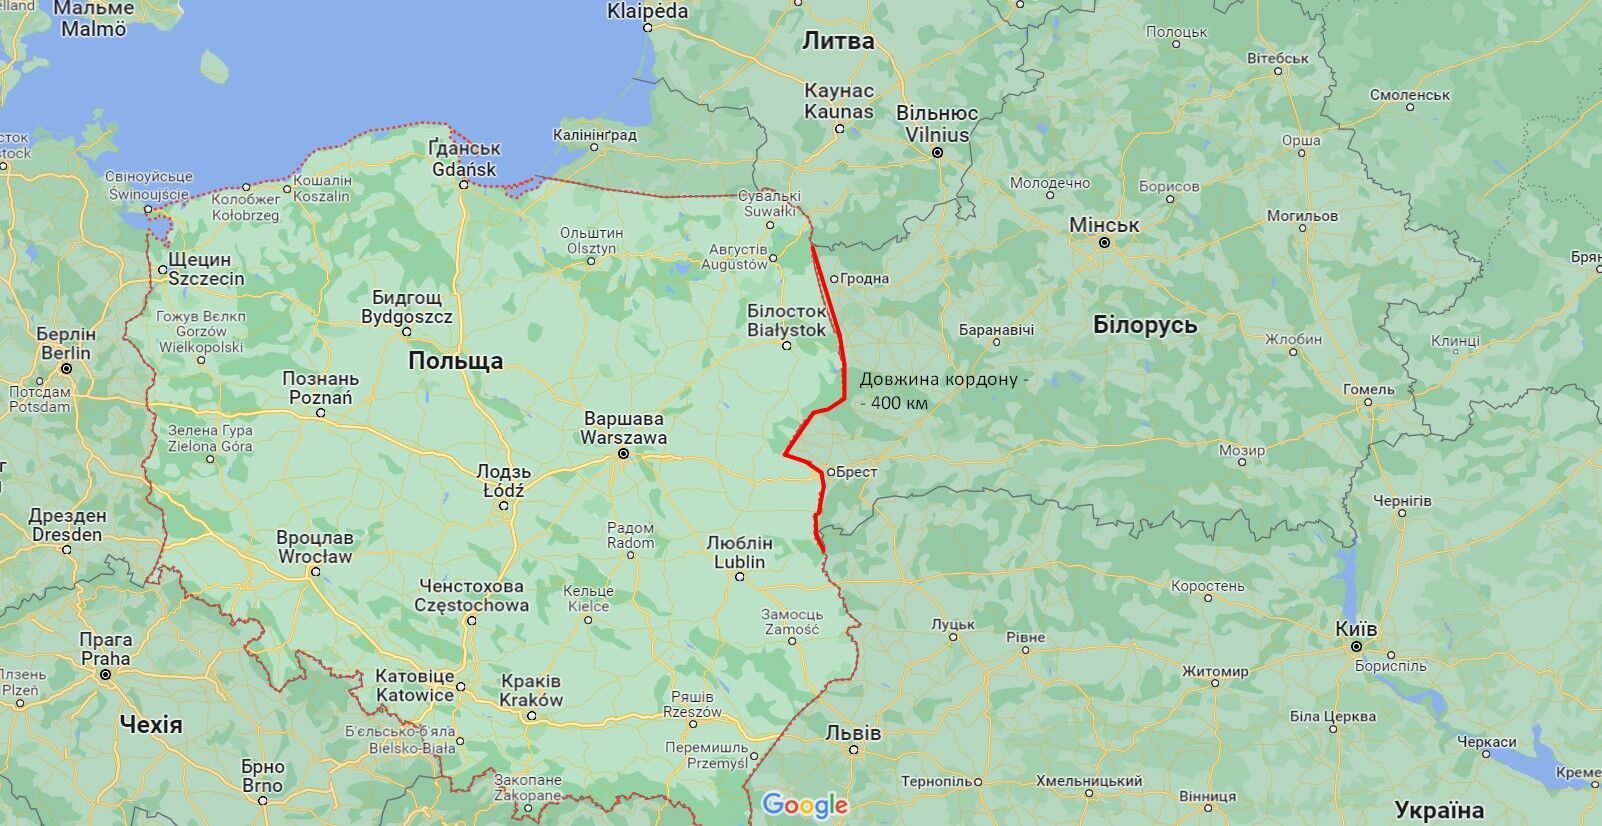 Какова длина польско-белорусской границы